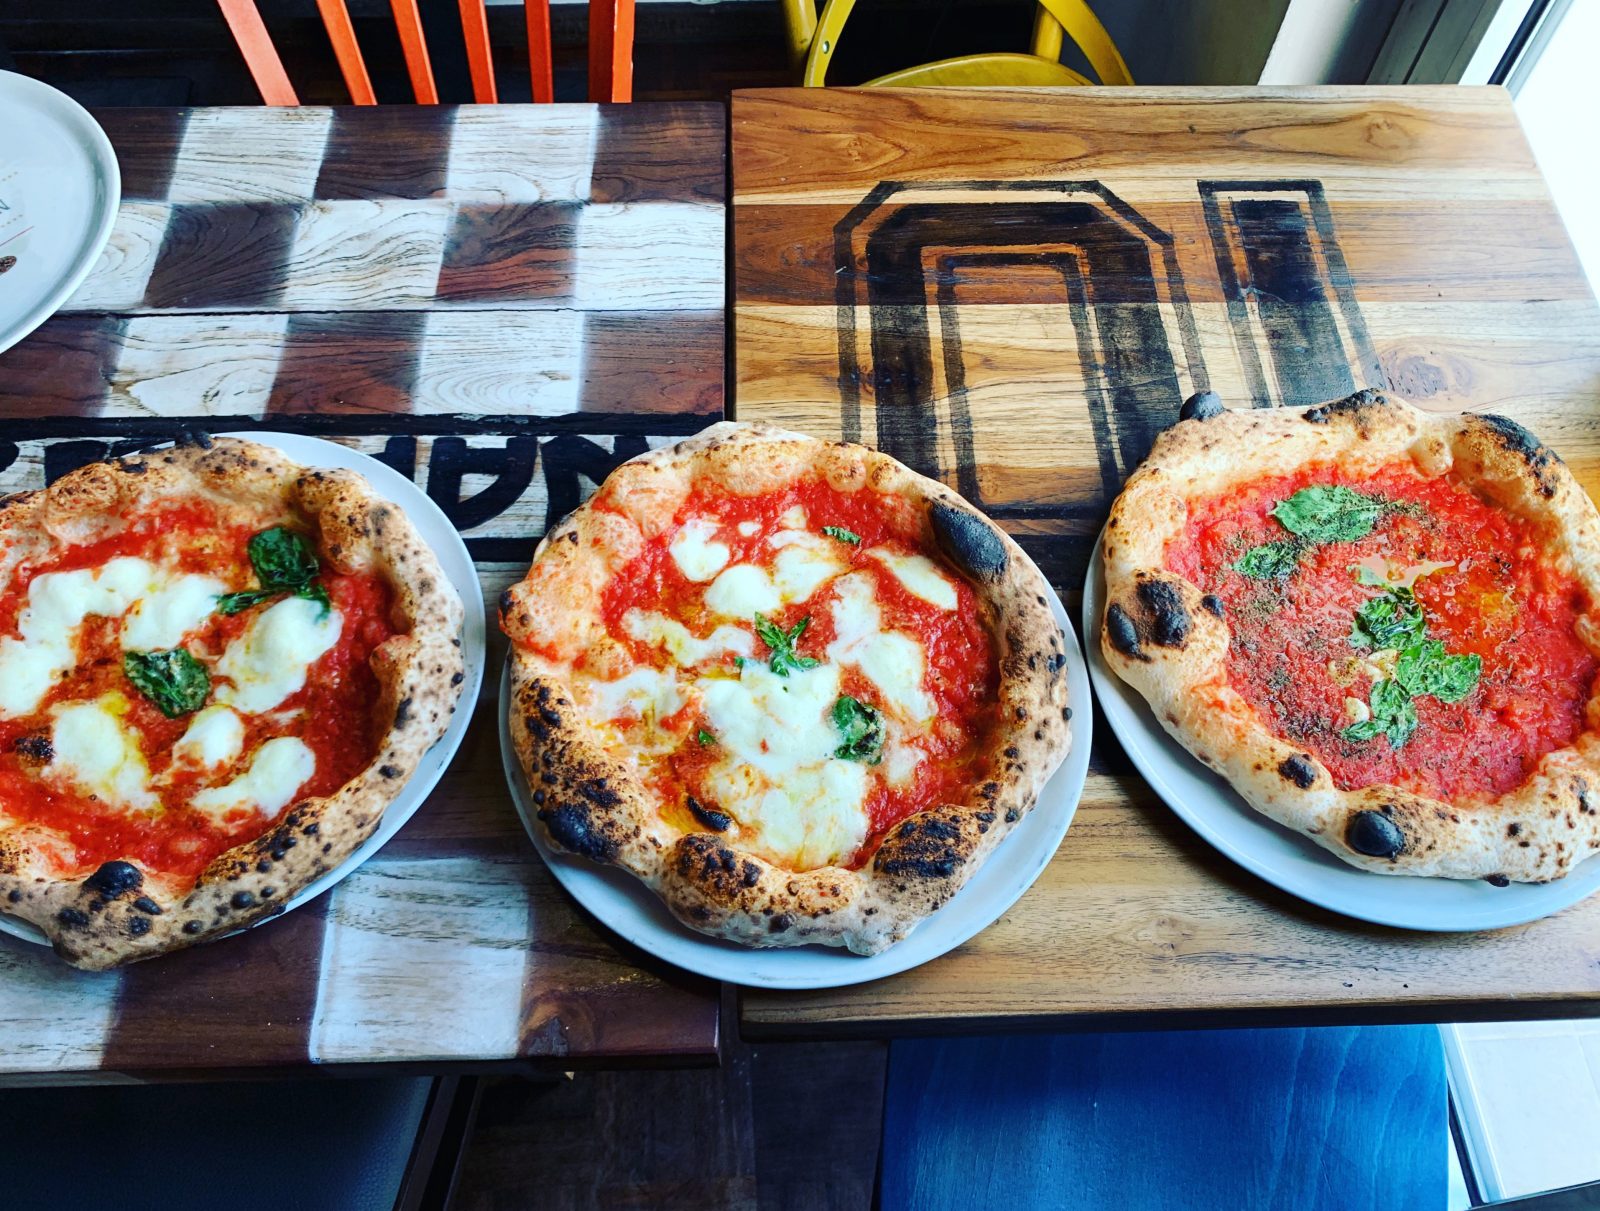 Italien in Berlin: Die Pizza von Malafemmena ist phänomenal. 